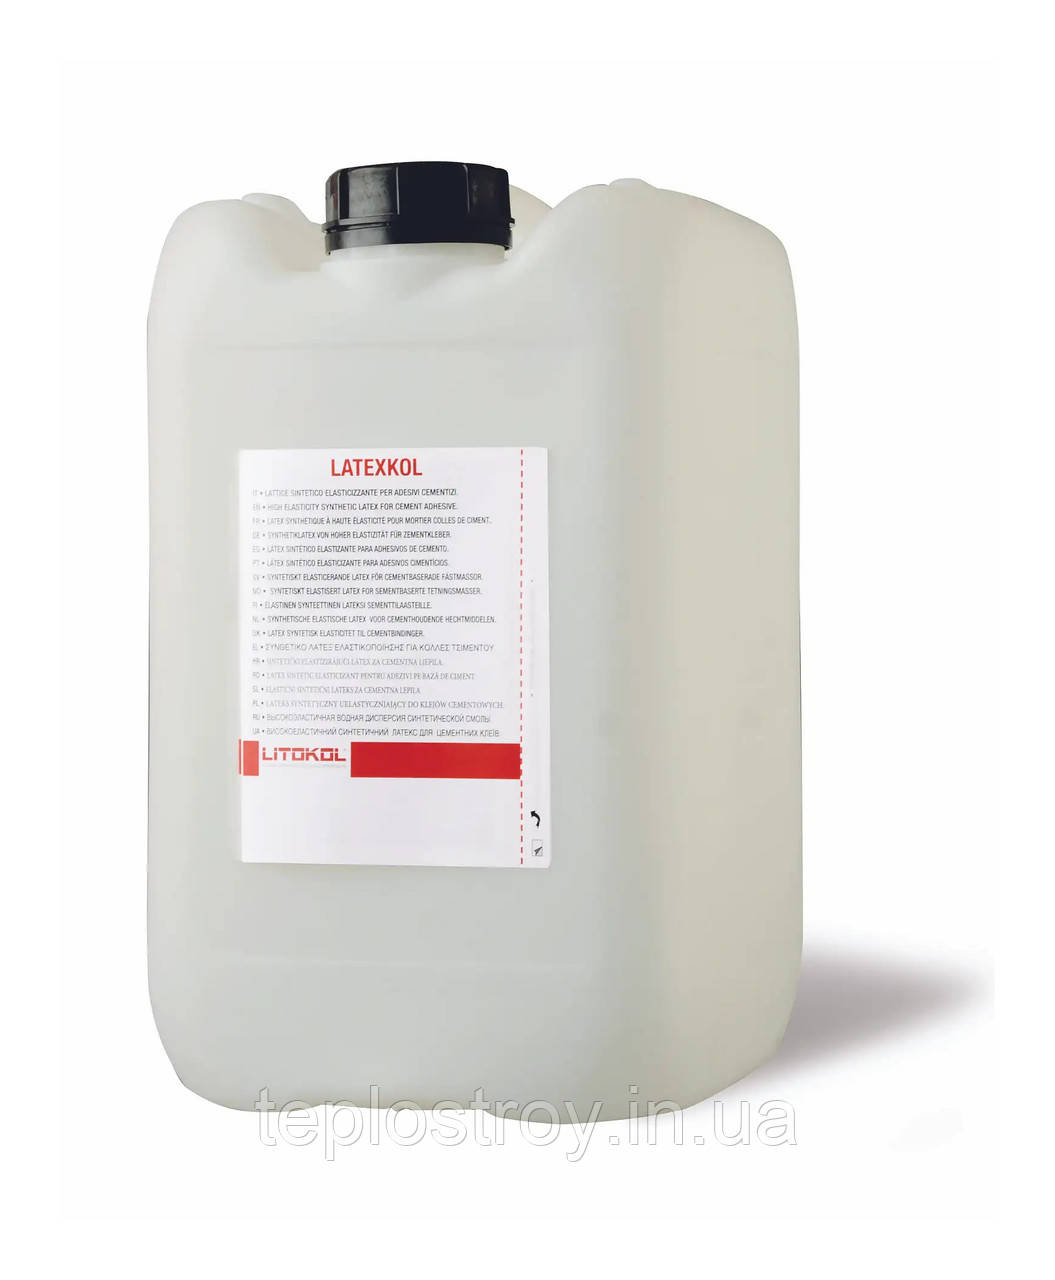 Latexkol - Еластична латексна добавка для цементних клеїв. Каністра 10 кг